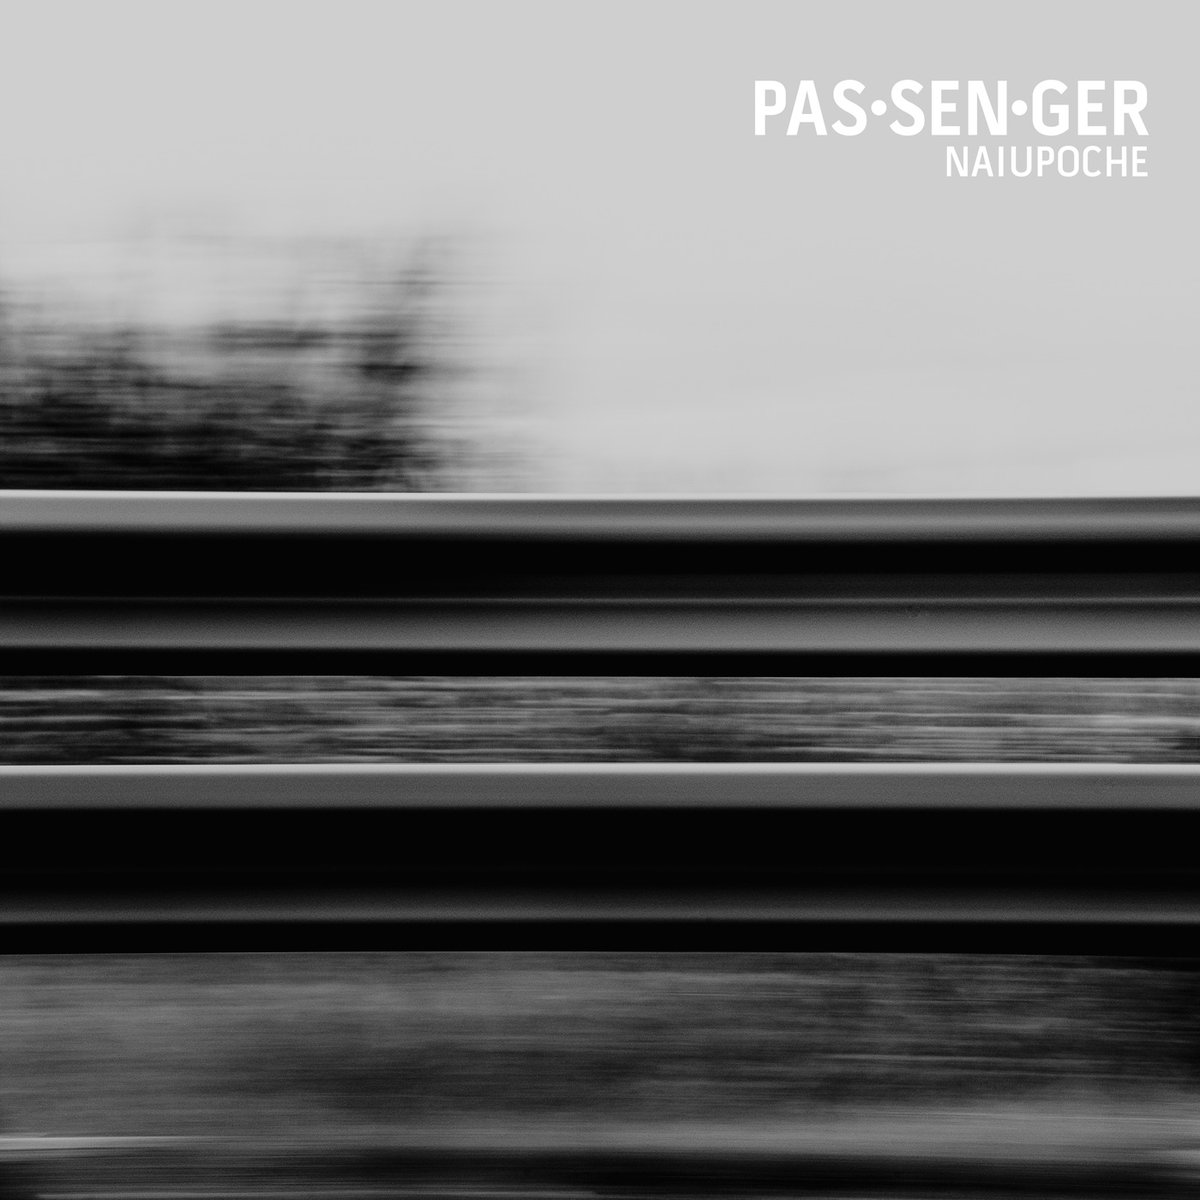 Naiupoche - Venerdì santo, Vol. 1: Passenger - album cover